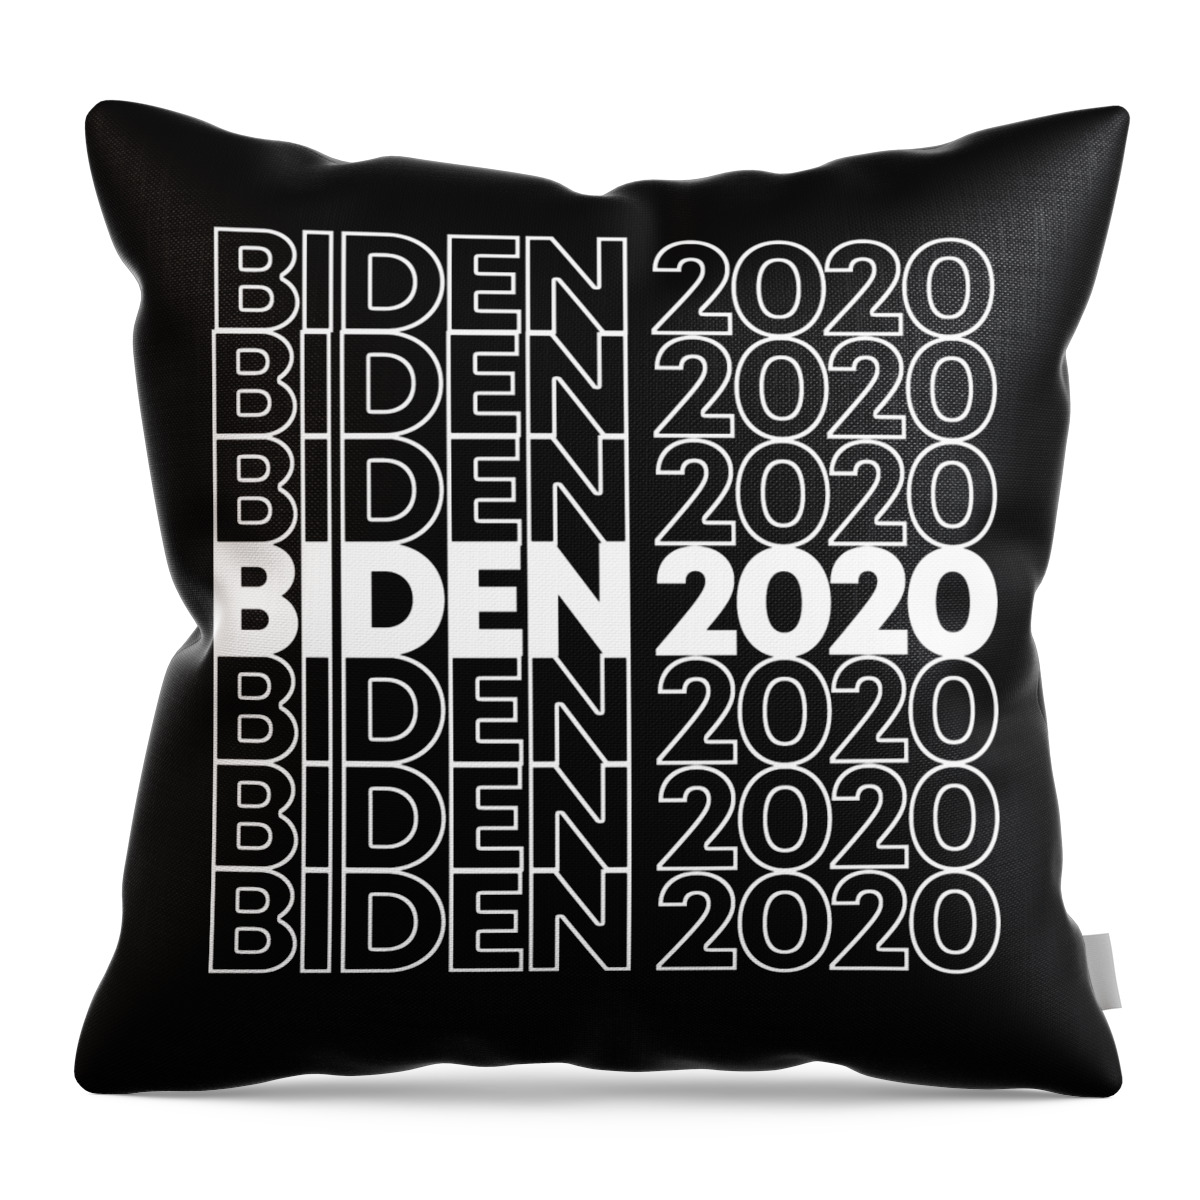 Joe Biden 2020 Throw Pillow featuring the digital art Joe Biden 2020 by Flippin Sweet Gear